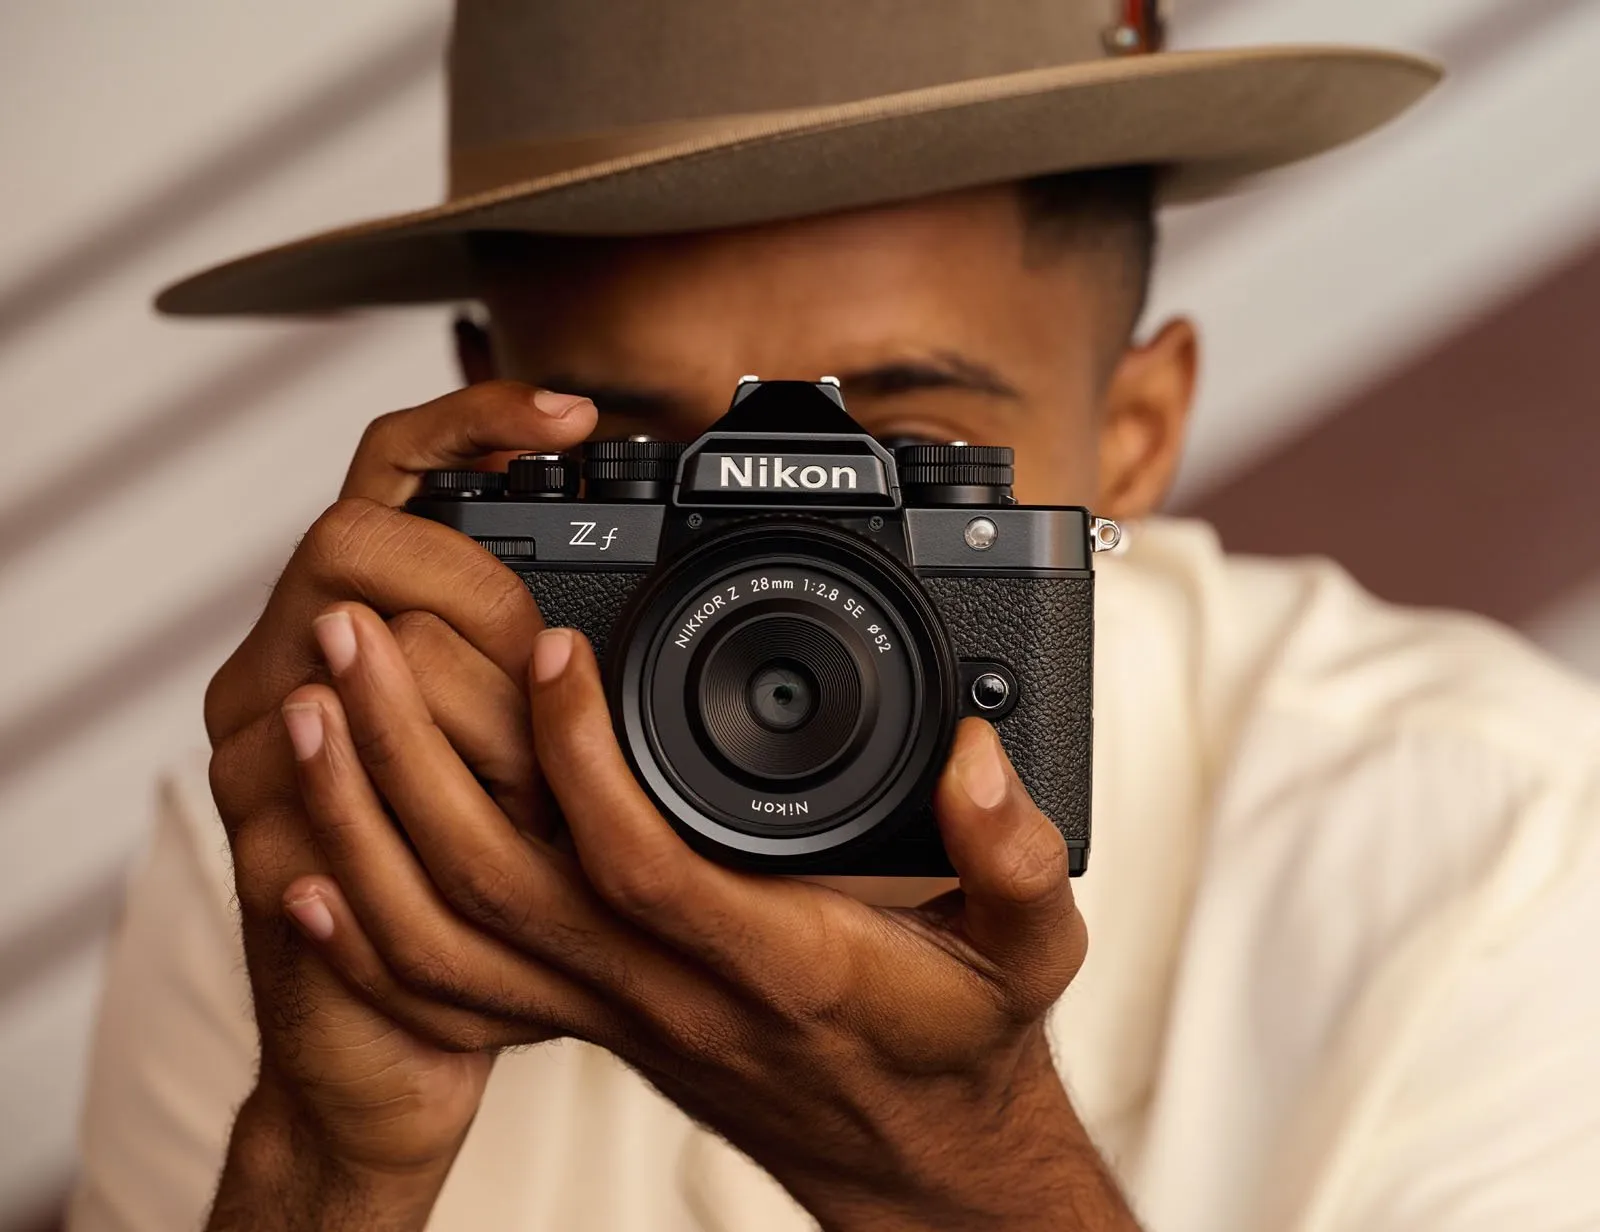 Đặt trước máy ảnh Nikon Zf giá 48.99 triệu đồng và phần quà tặng trị giá 4.8 triệu